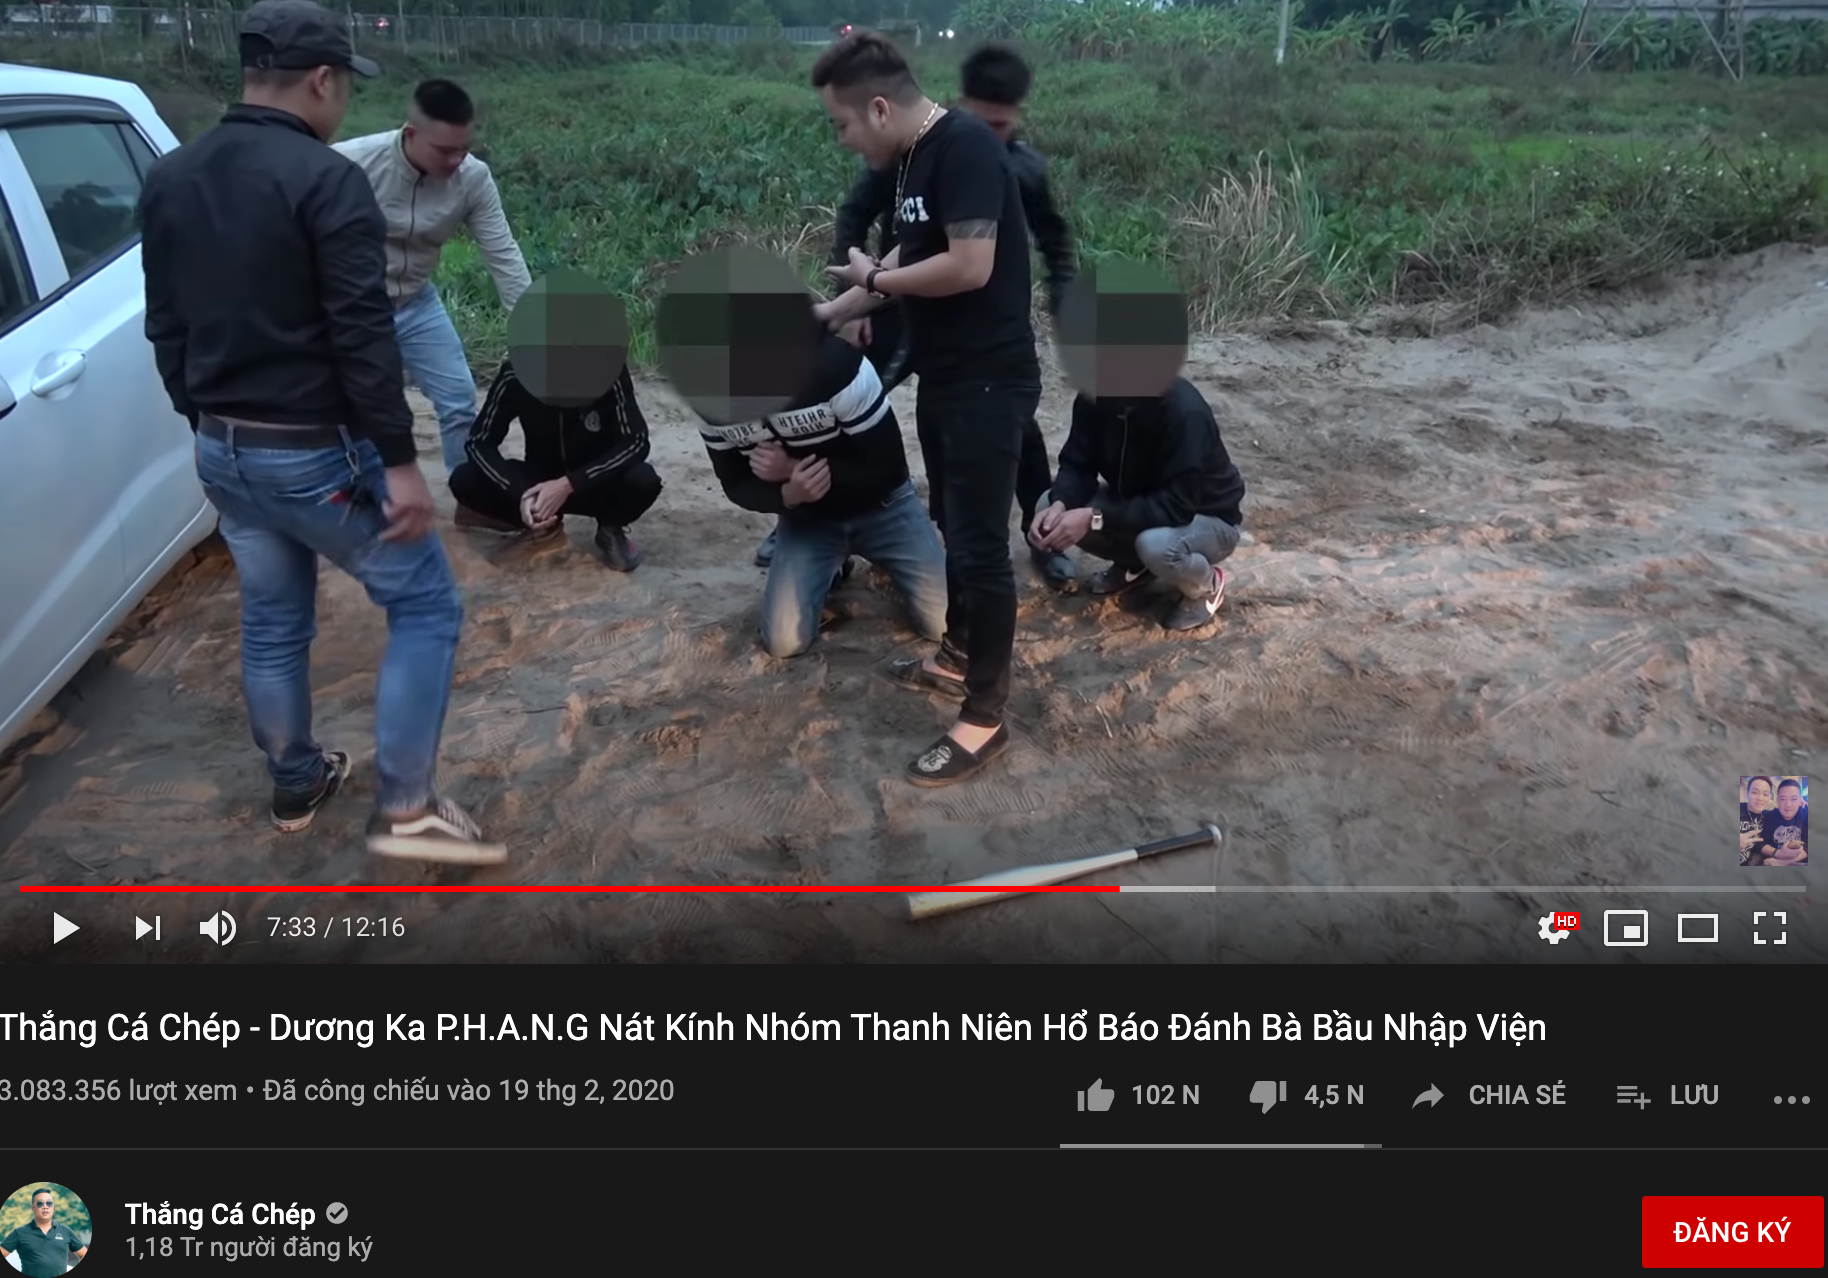 Diễn Cảnh Anh Hùng, Giang Hồ Đua Nhau Làm Video Bạo Lực Trên Youtube